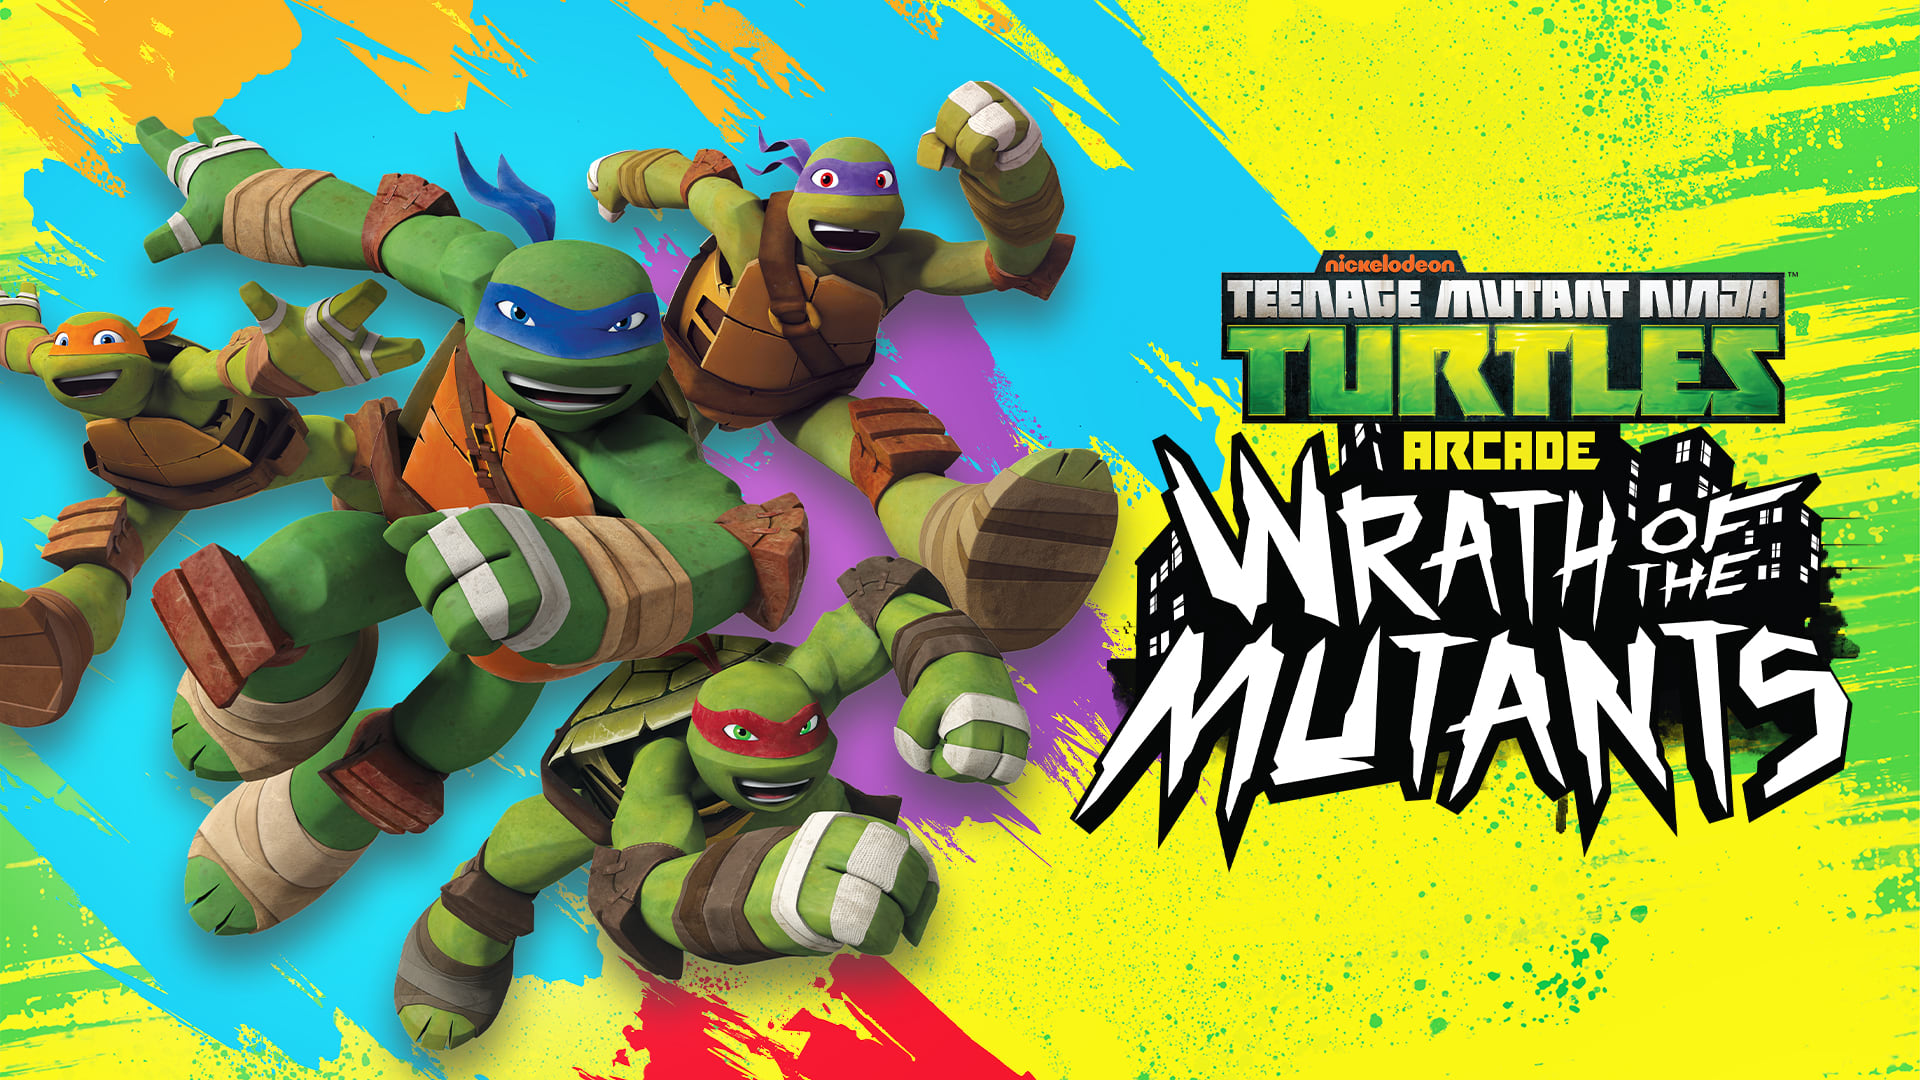 Teenage Mutant Ninja Turtles Arcade: Wrath of the Mutants 1